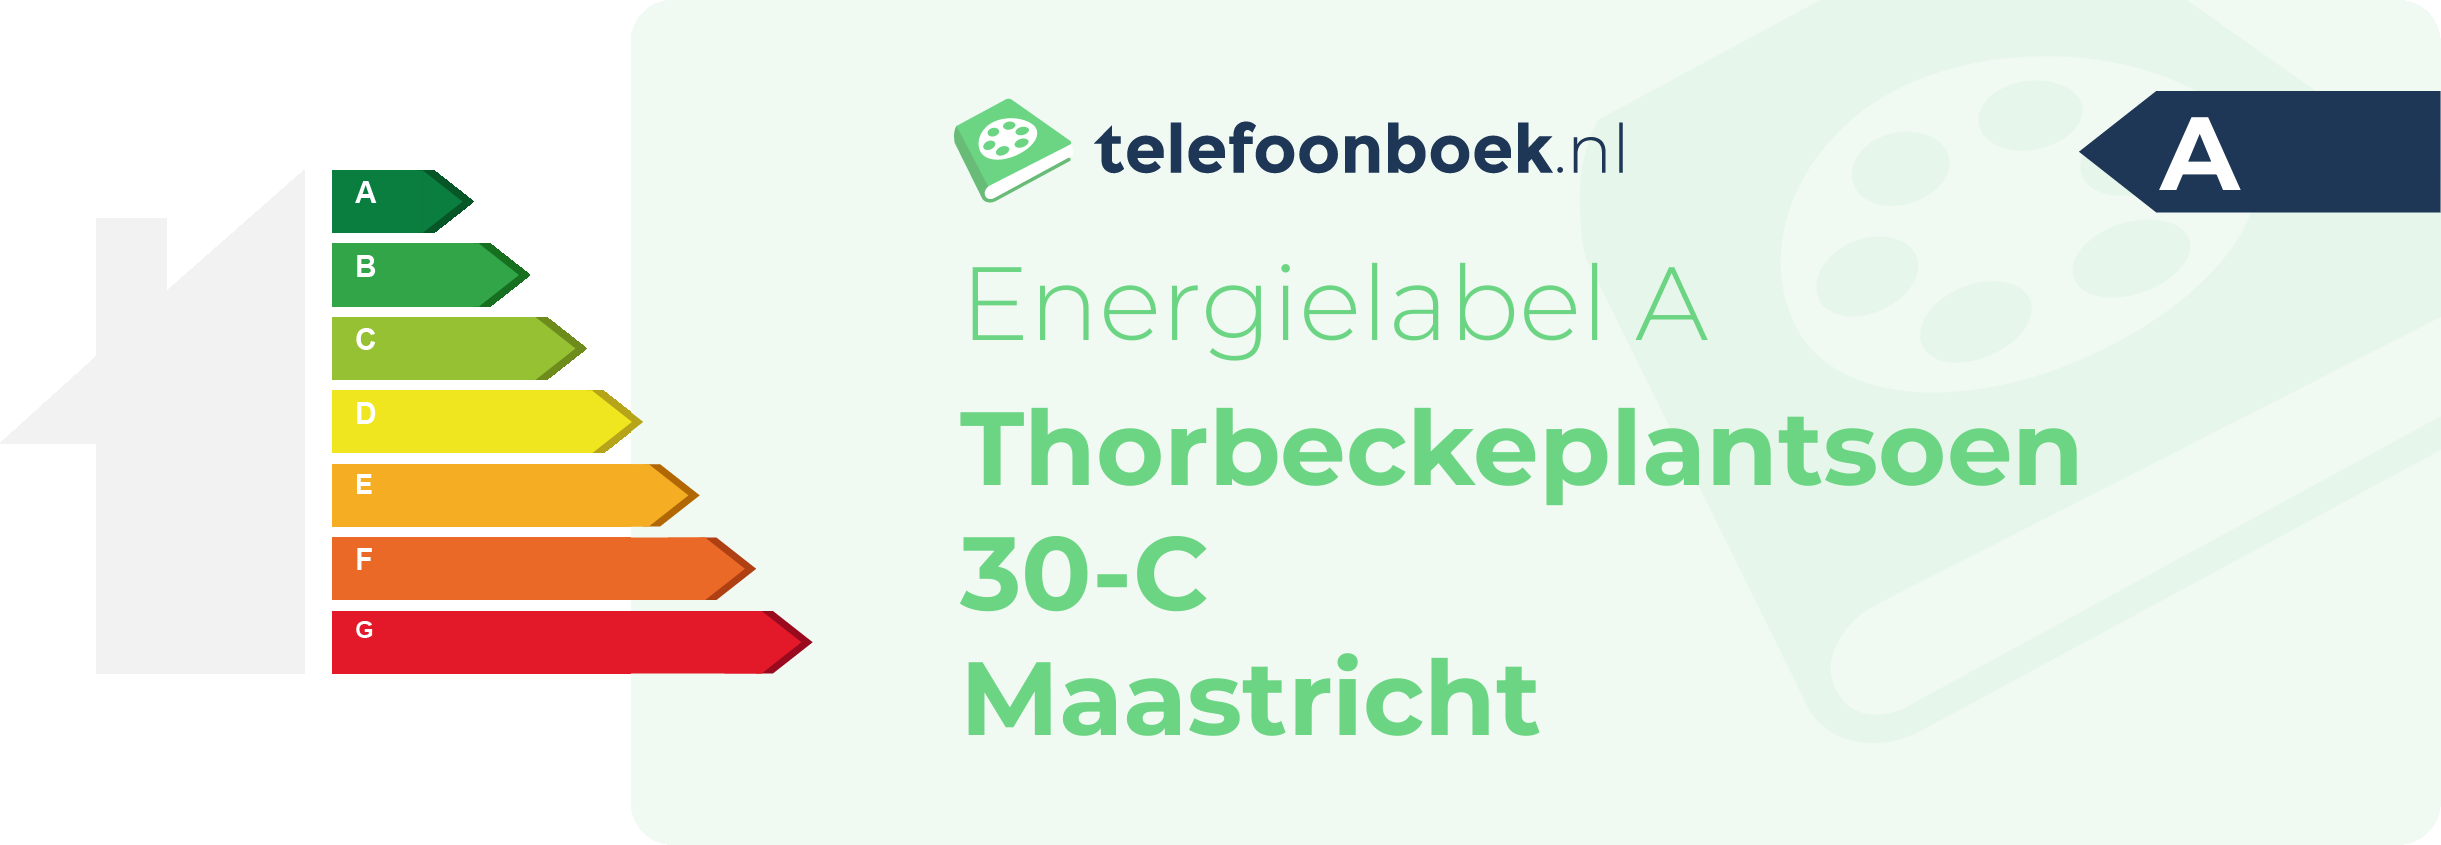 Energielabel Thorbeckeplantsoen 30-C Maastricht